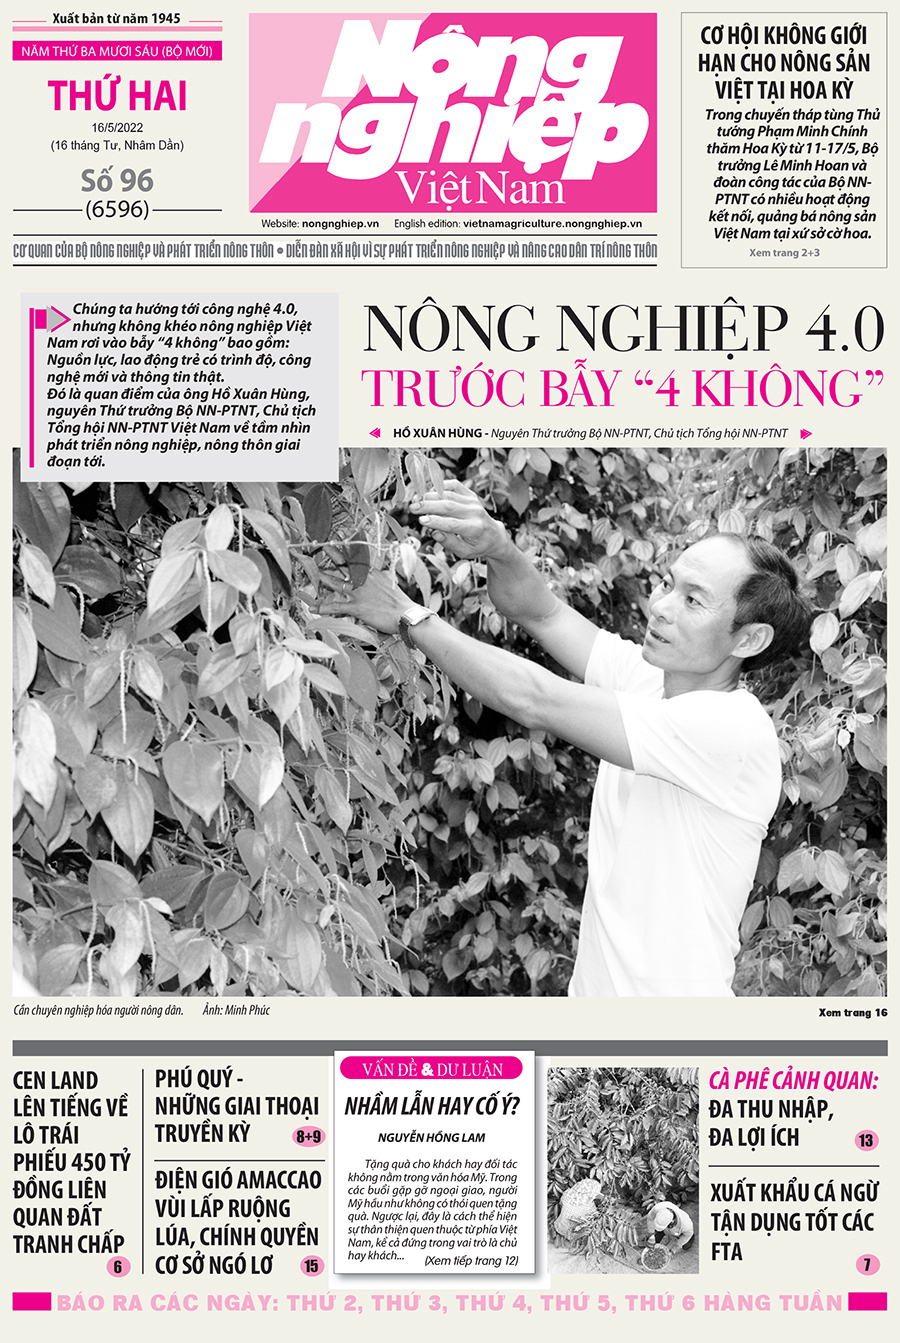 Tổng hợp tin tức báo giấy trên Báo Nông nghiệp Việt Nam số 96 ra ngày 16/5/2022